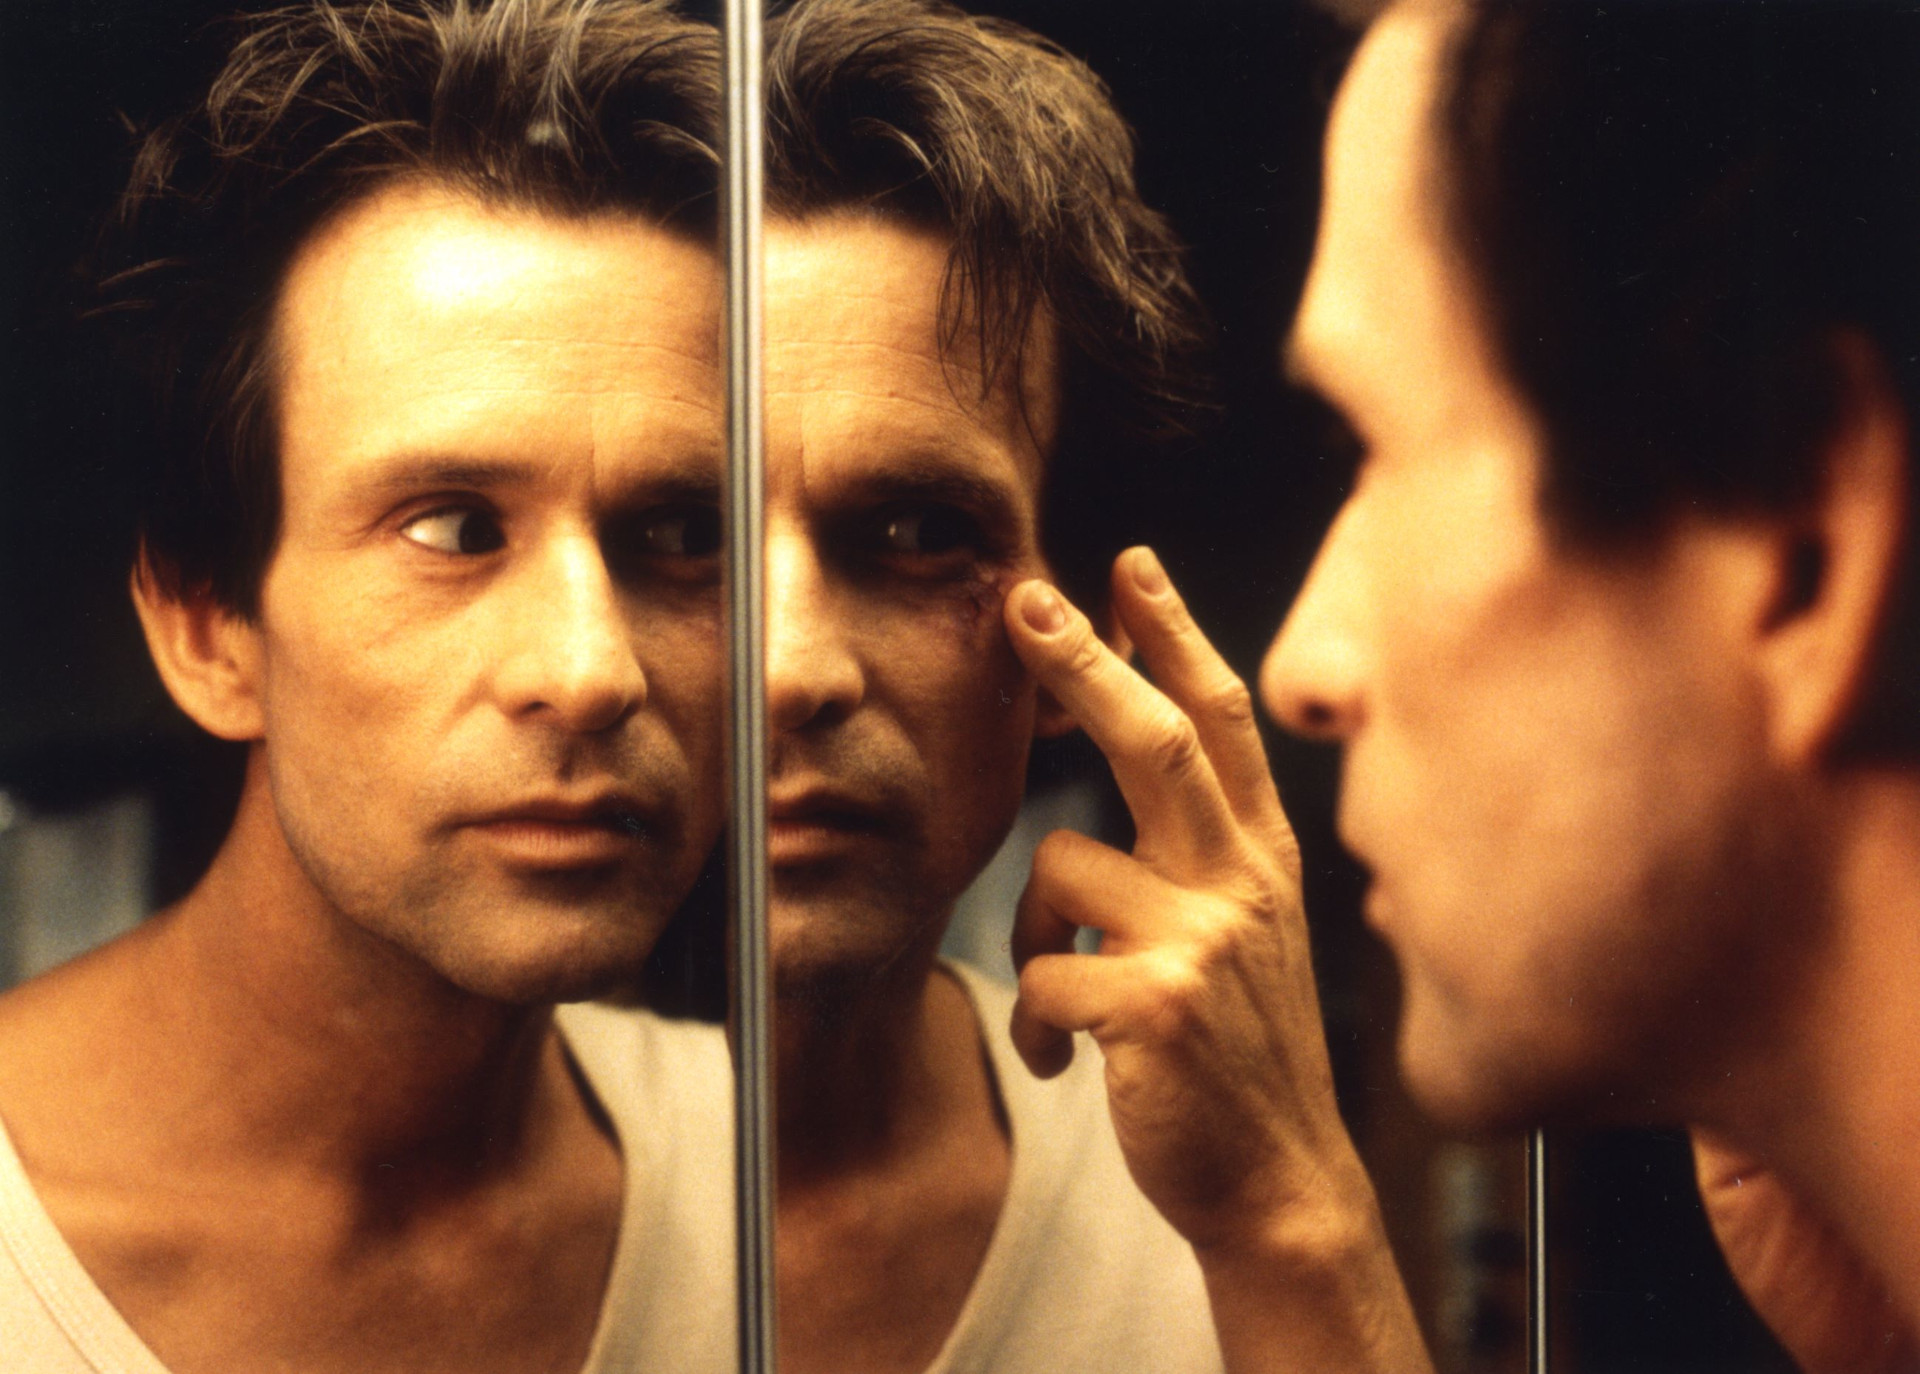 Filmstill aus dem Film Winterschläfer. Ein Mann betrachtet sich im Spiegel.